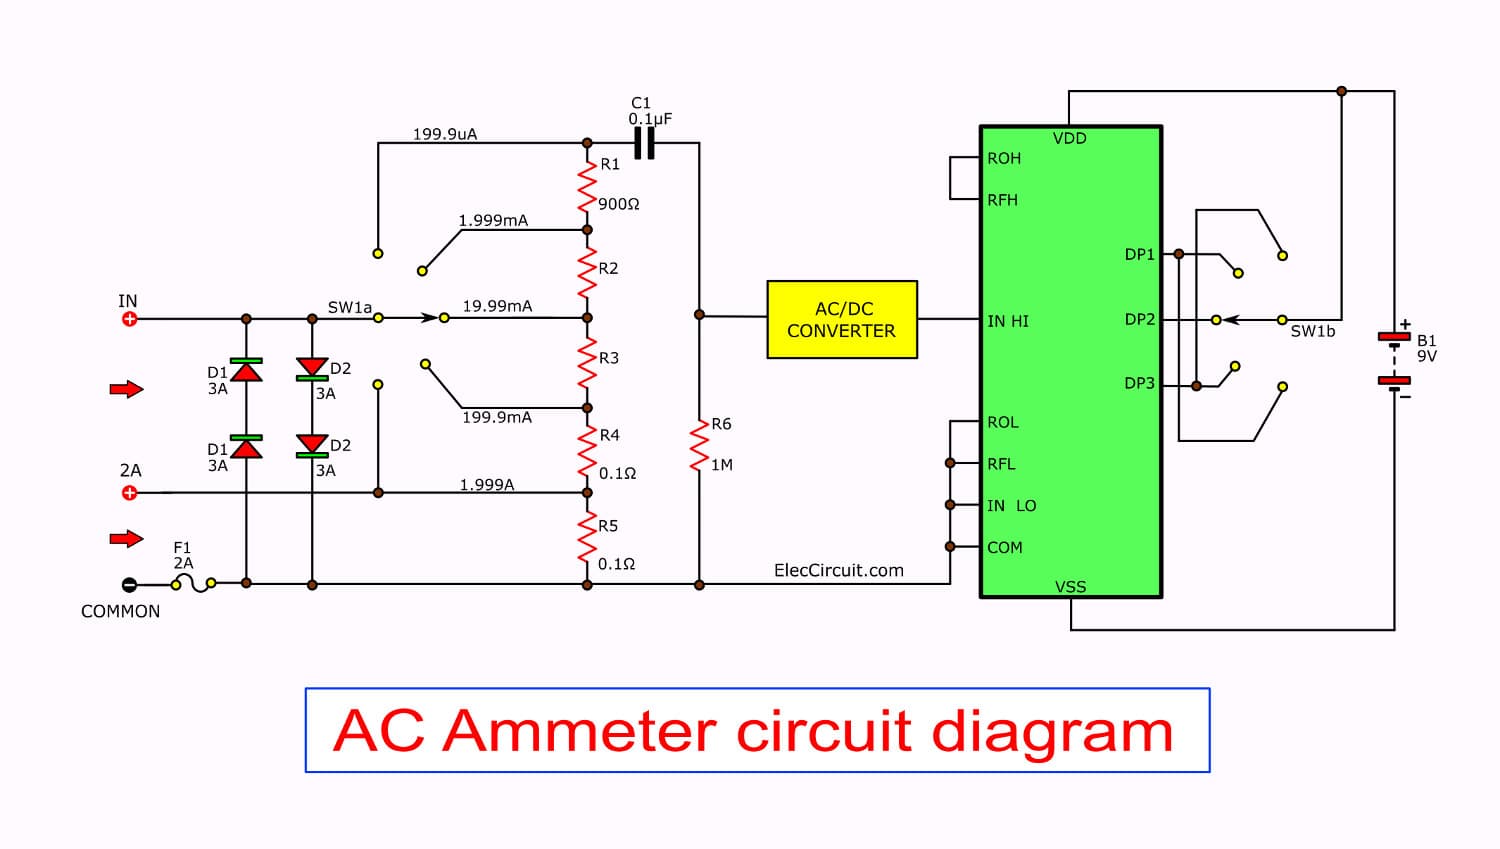 7 Fn Digital Multimeter AC DC Voltage Volt 10 Amp Current Resistance Ohm  Meter